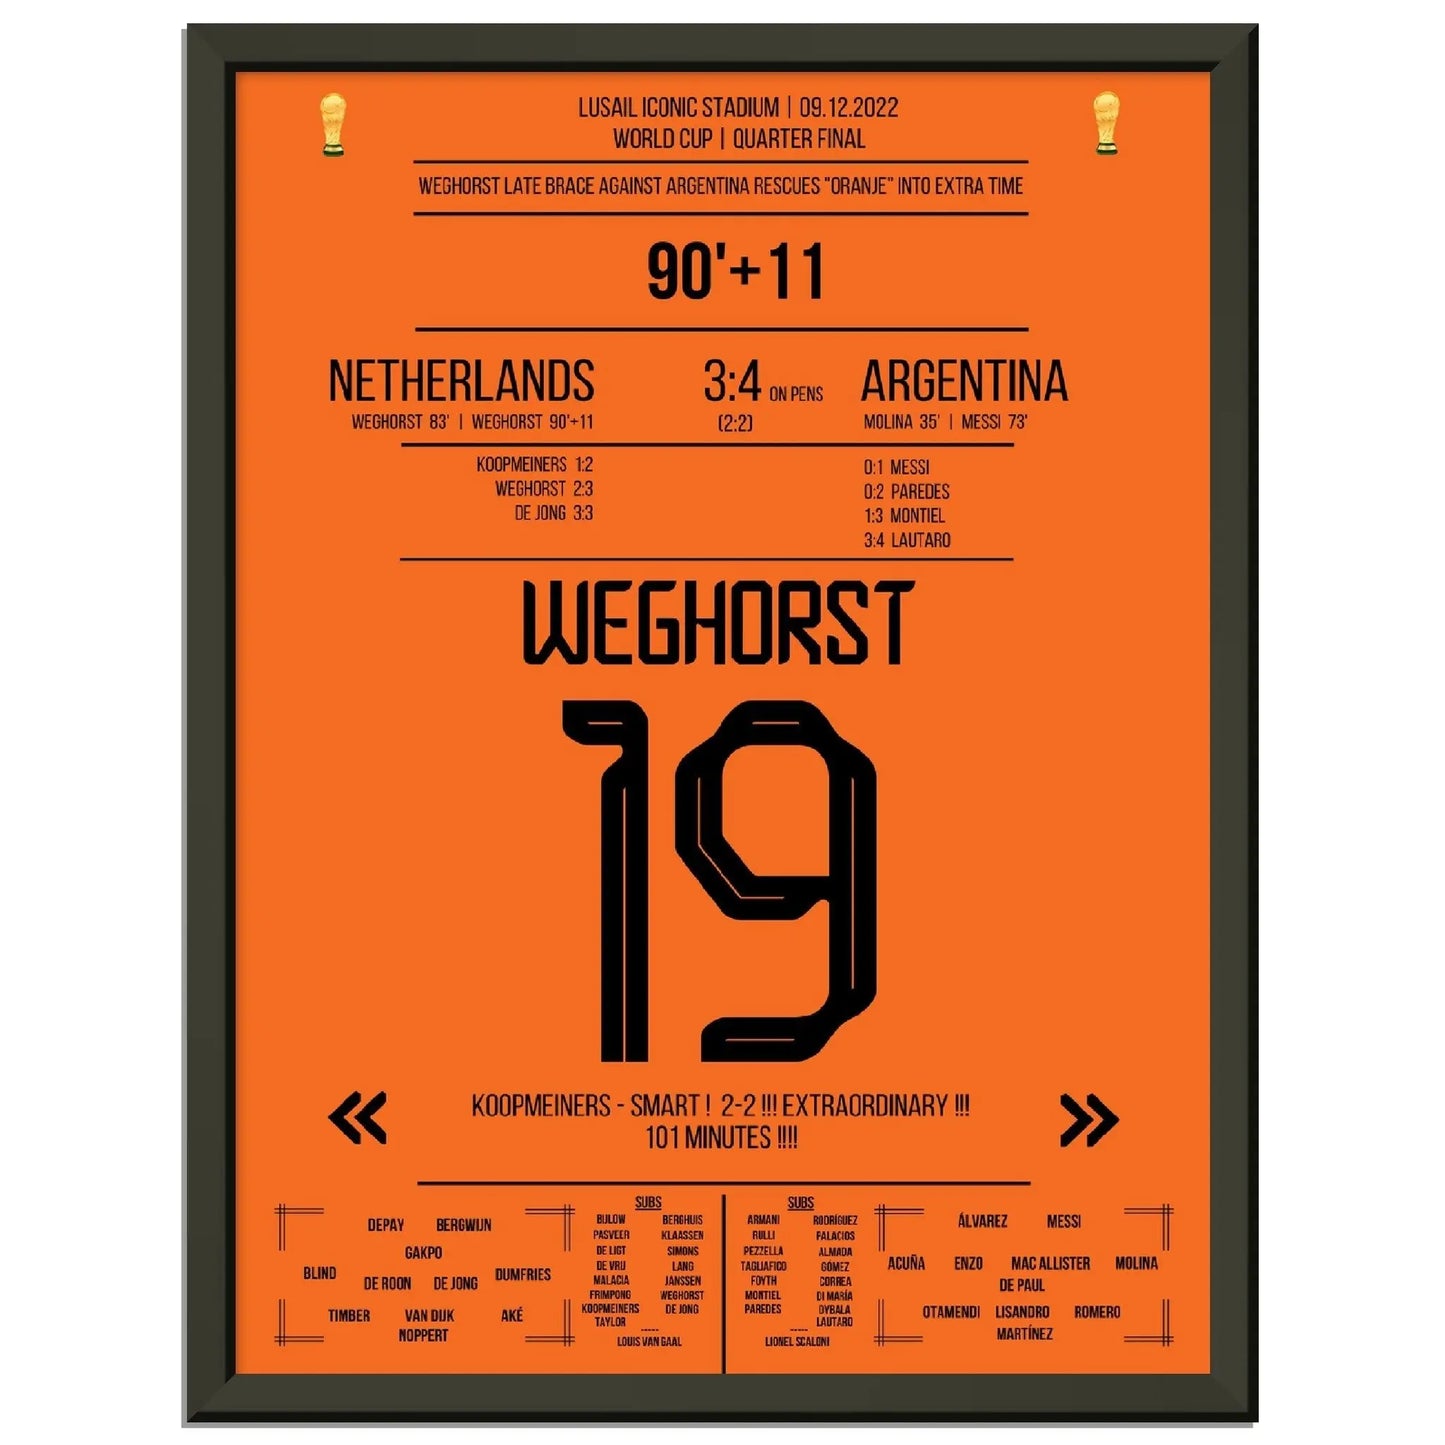 Weghorst's Tor zum Ausgleich in letzter Sekunde gegen Argentinien bei der Weltmeisterschaft 2022